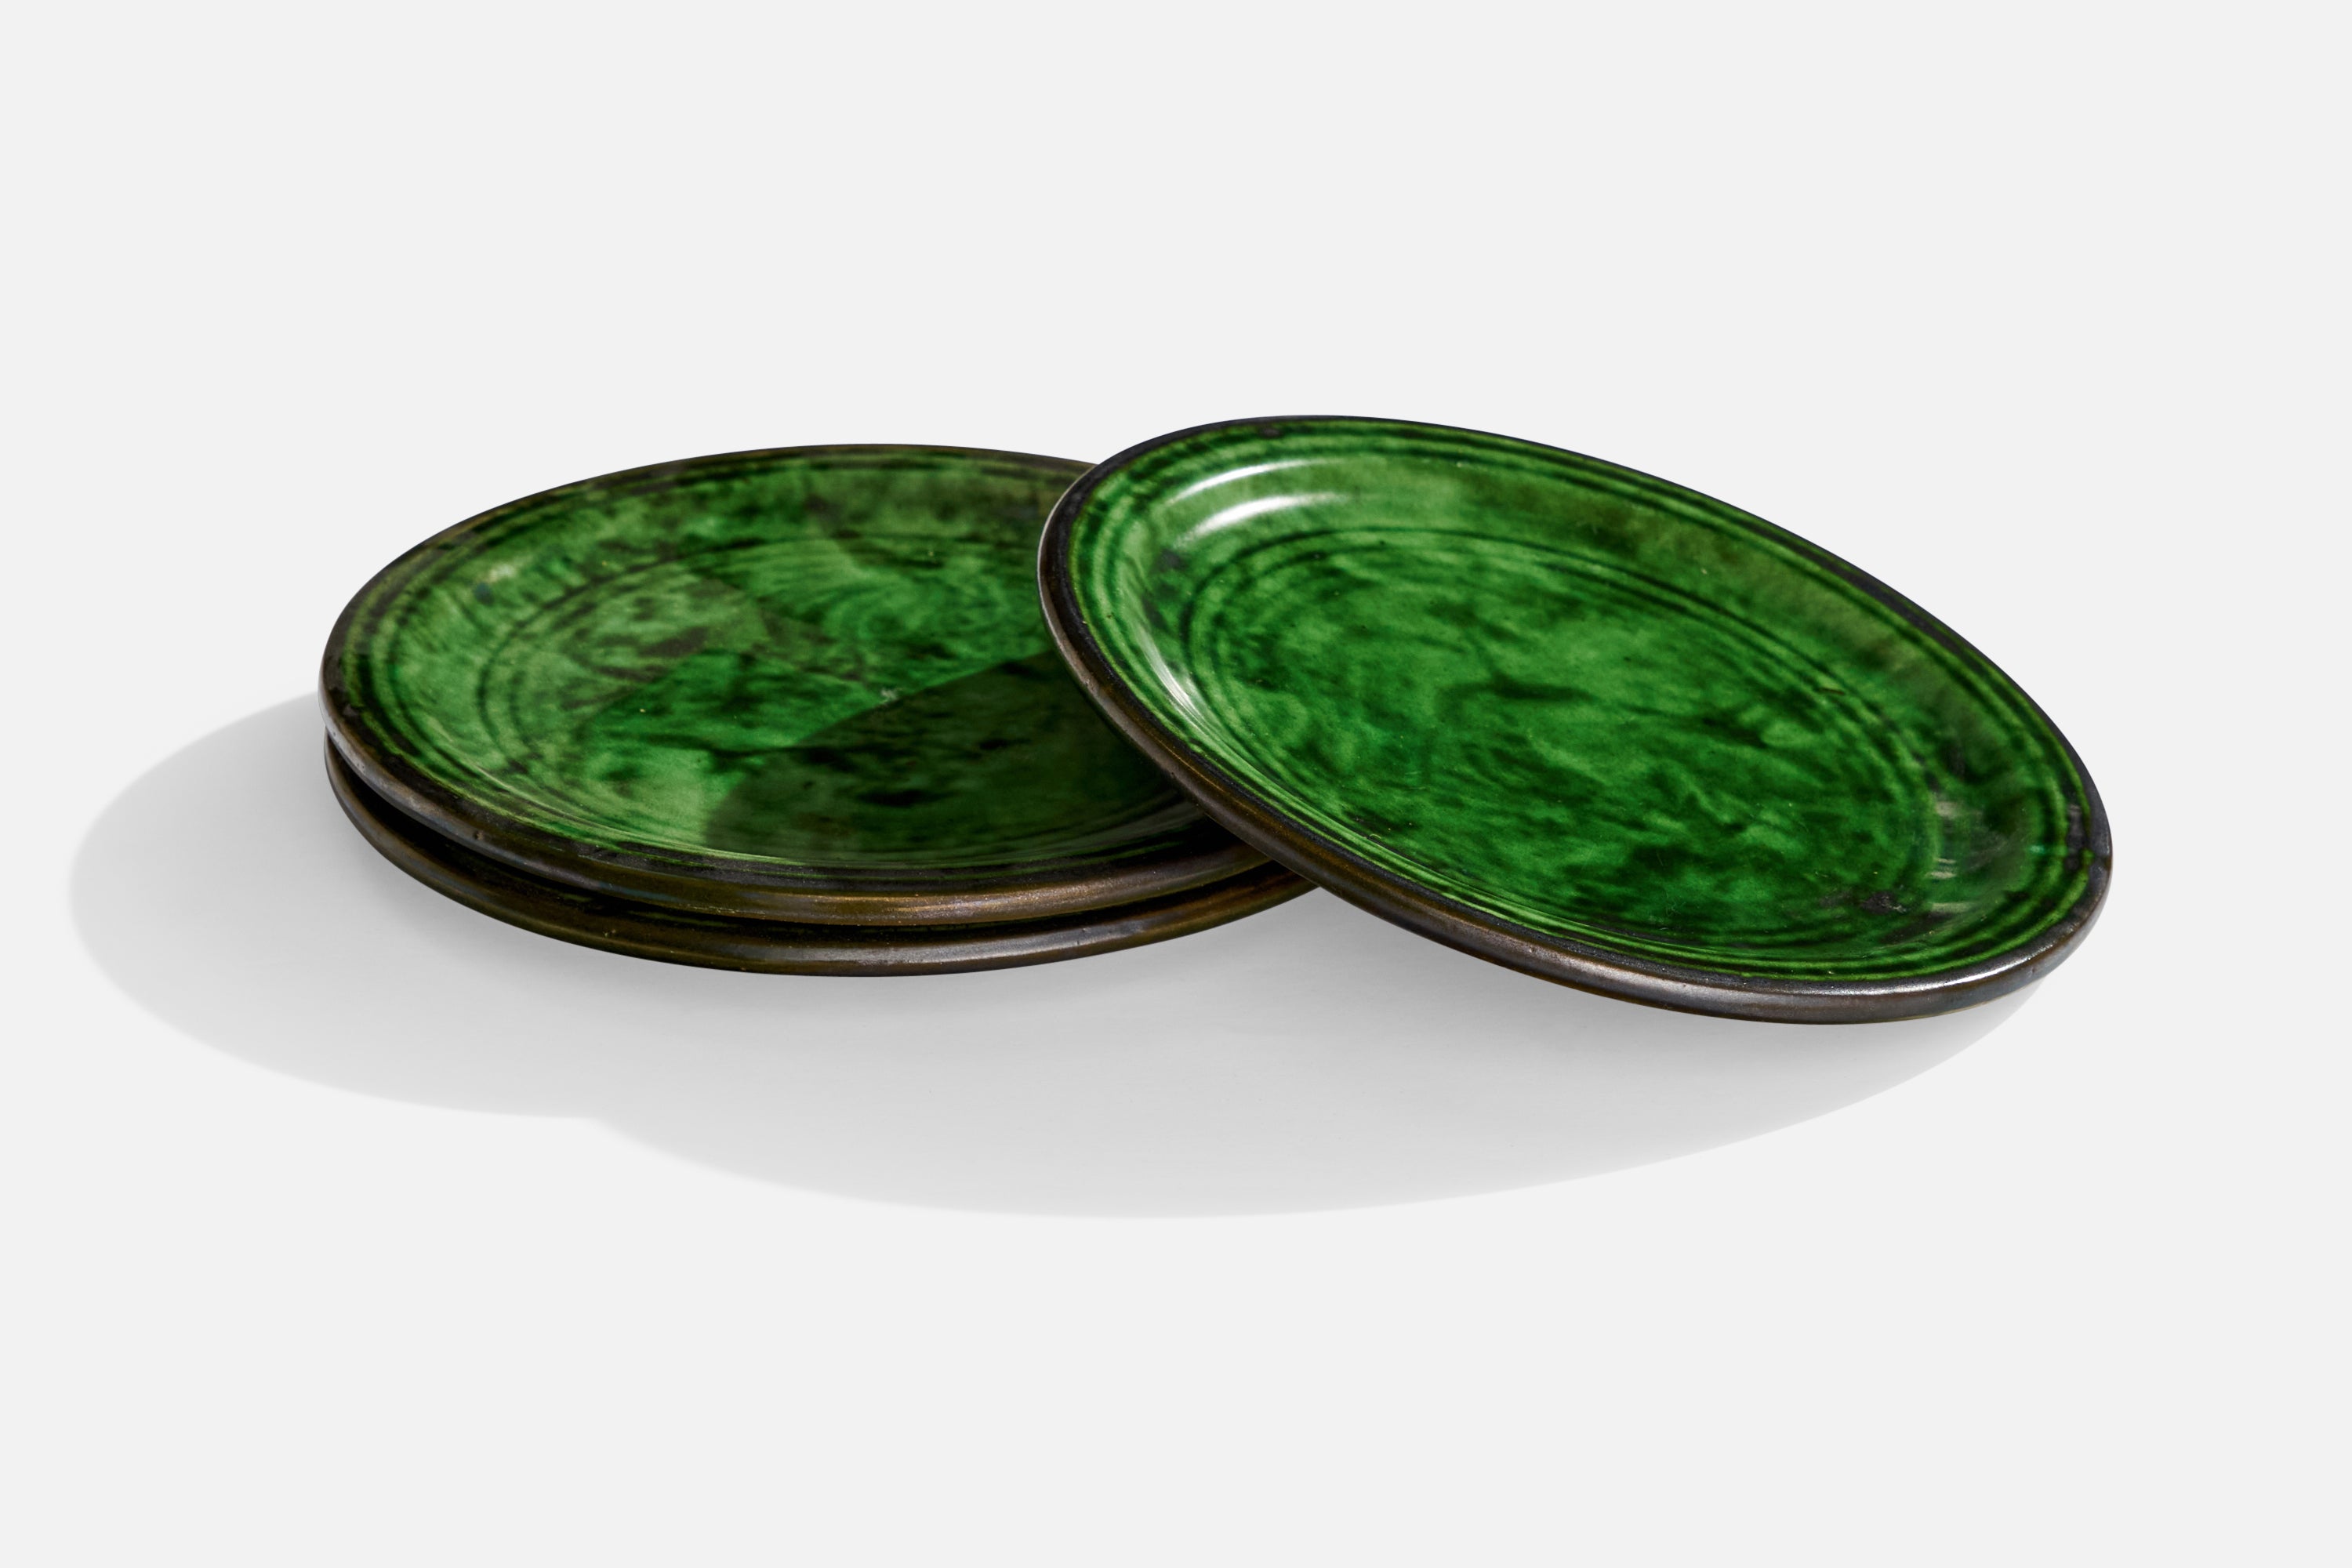 Ensemble de 3 petites assiettes en céramique émaillée verte produites par Nittsjö, Suède, années 1930.